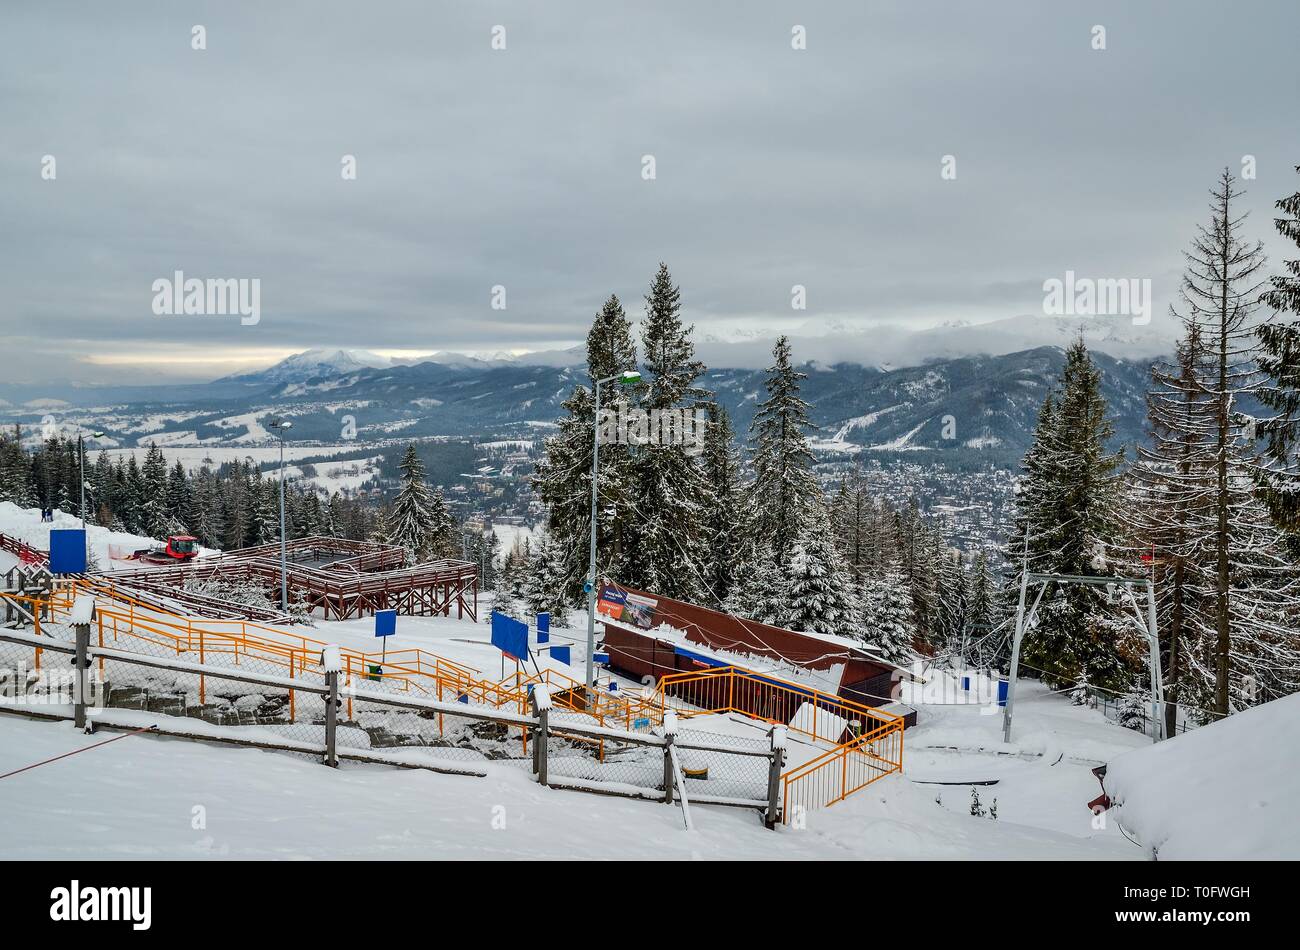 ZAKOPANE, POLAND - DECEMBER 30, 2018: View of the tourist town of Zakopane from the Gubalowka peak. Stock Photo